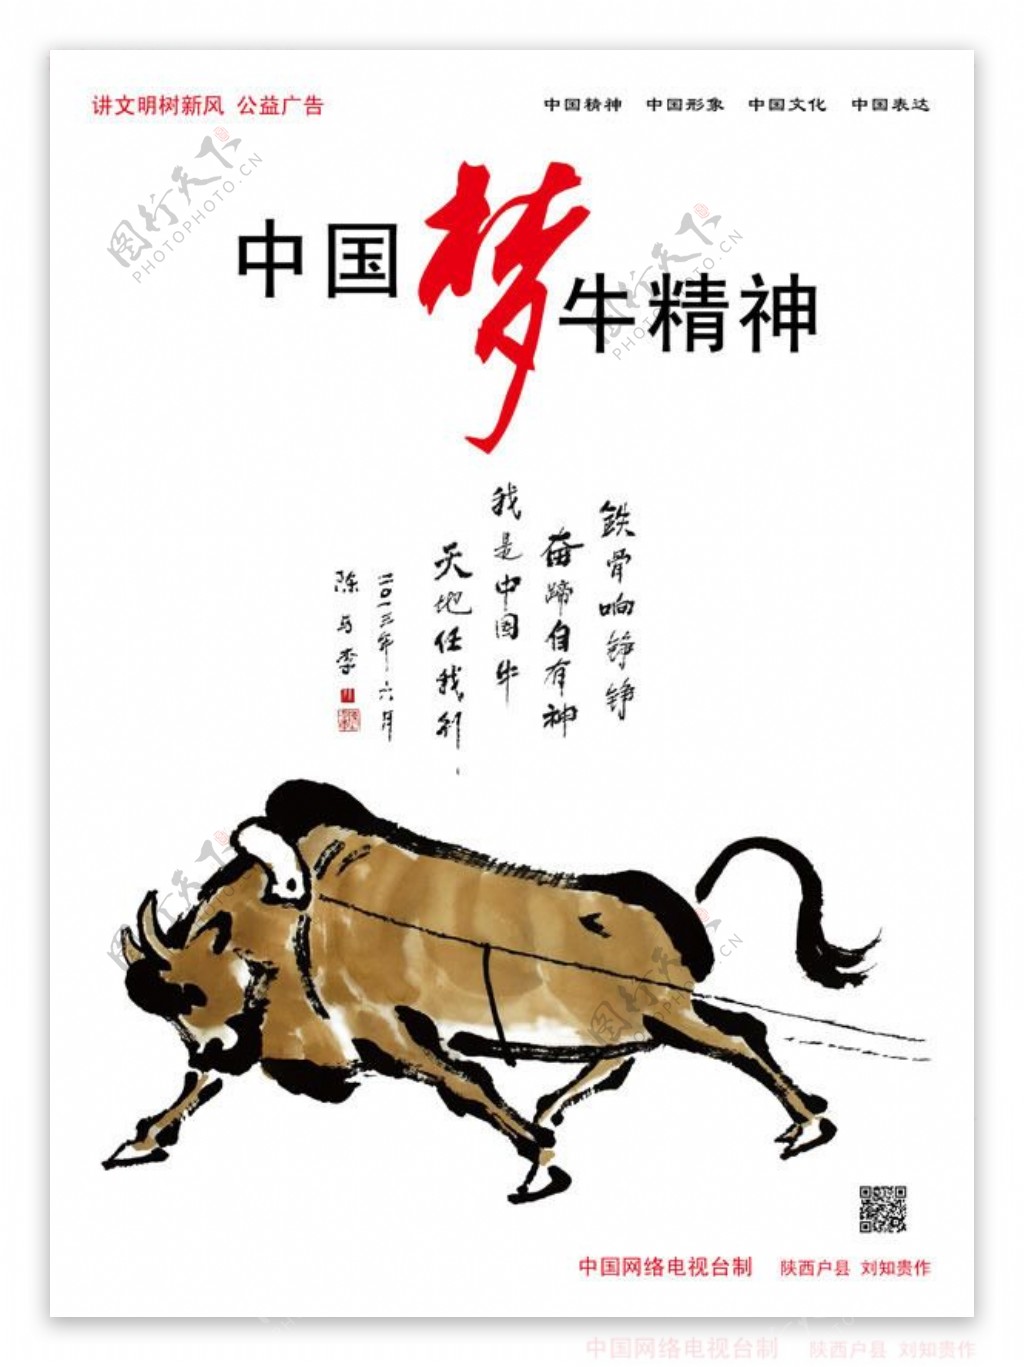 中国梦牛精神公益广告设计psd素材